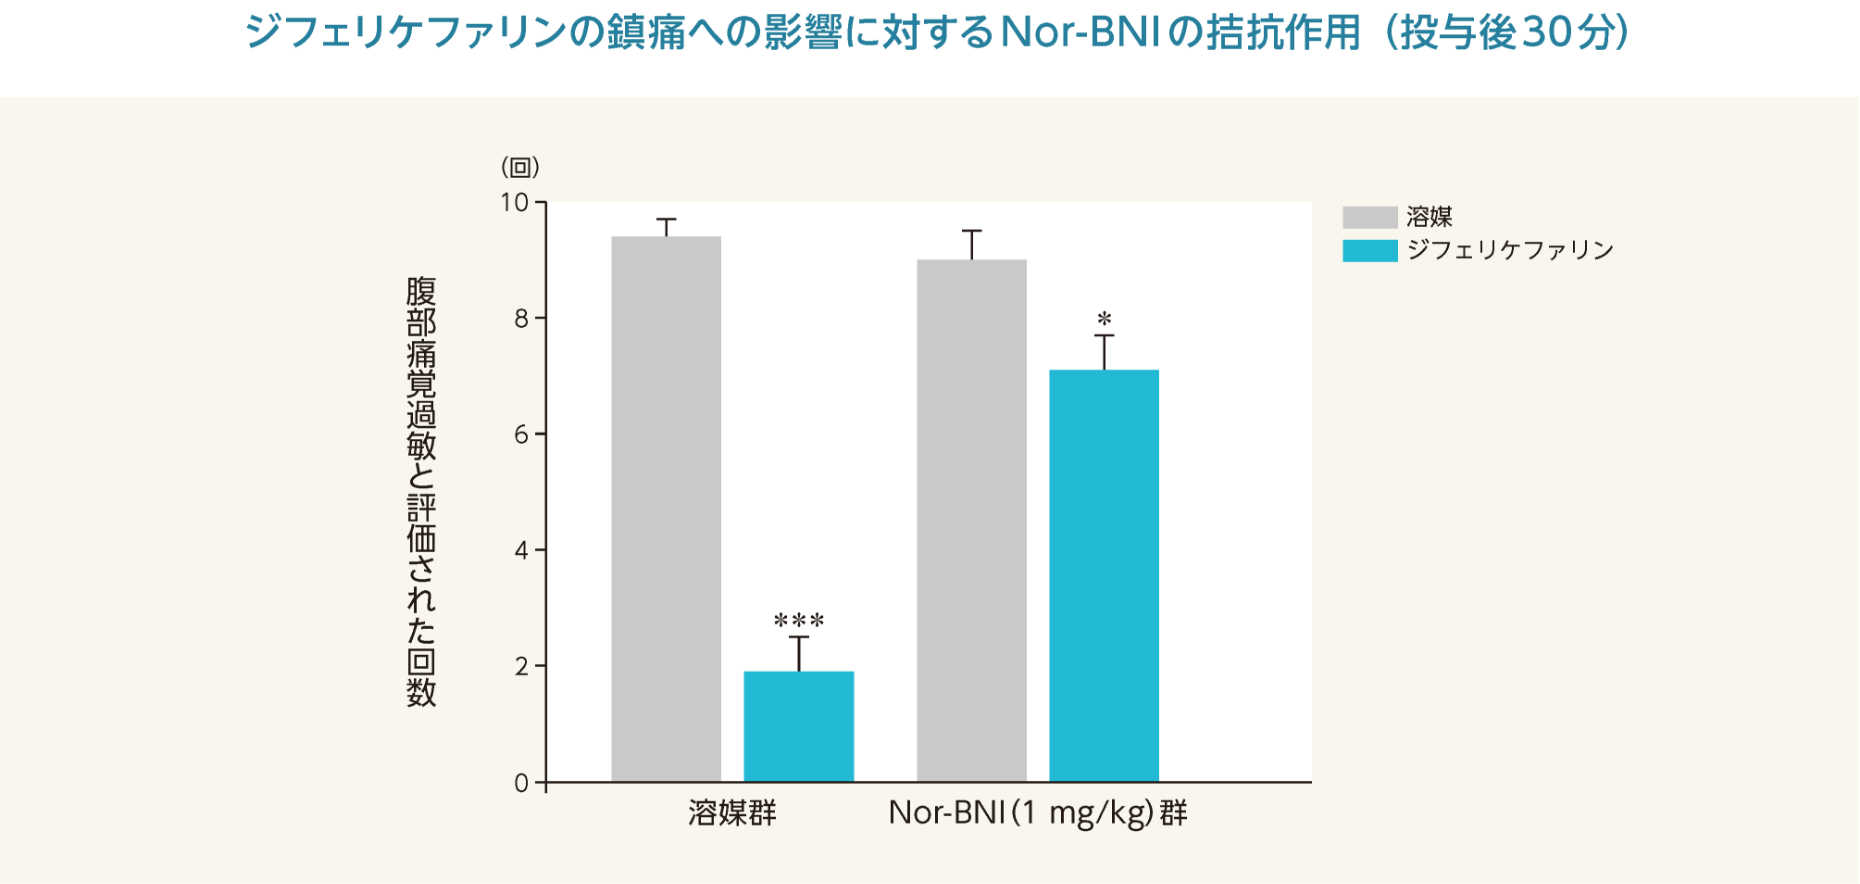 ジフェリケファリンの鎮痛への影響に対するNor-BNIの拮抗作用（投与後30分）